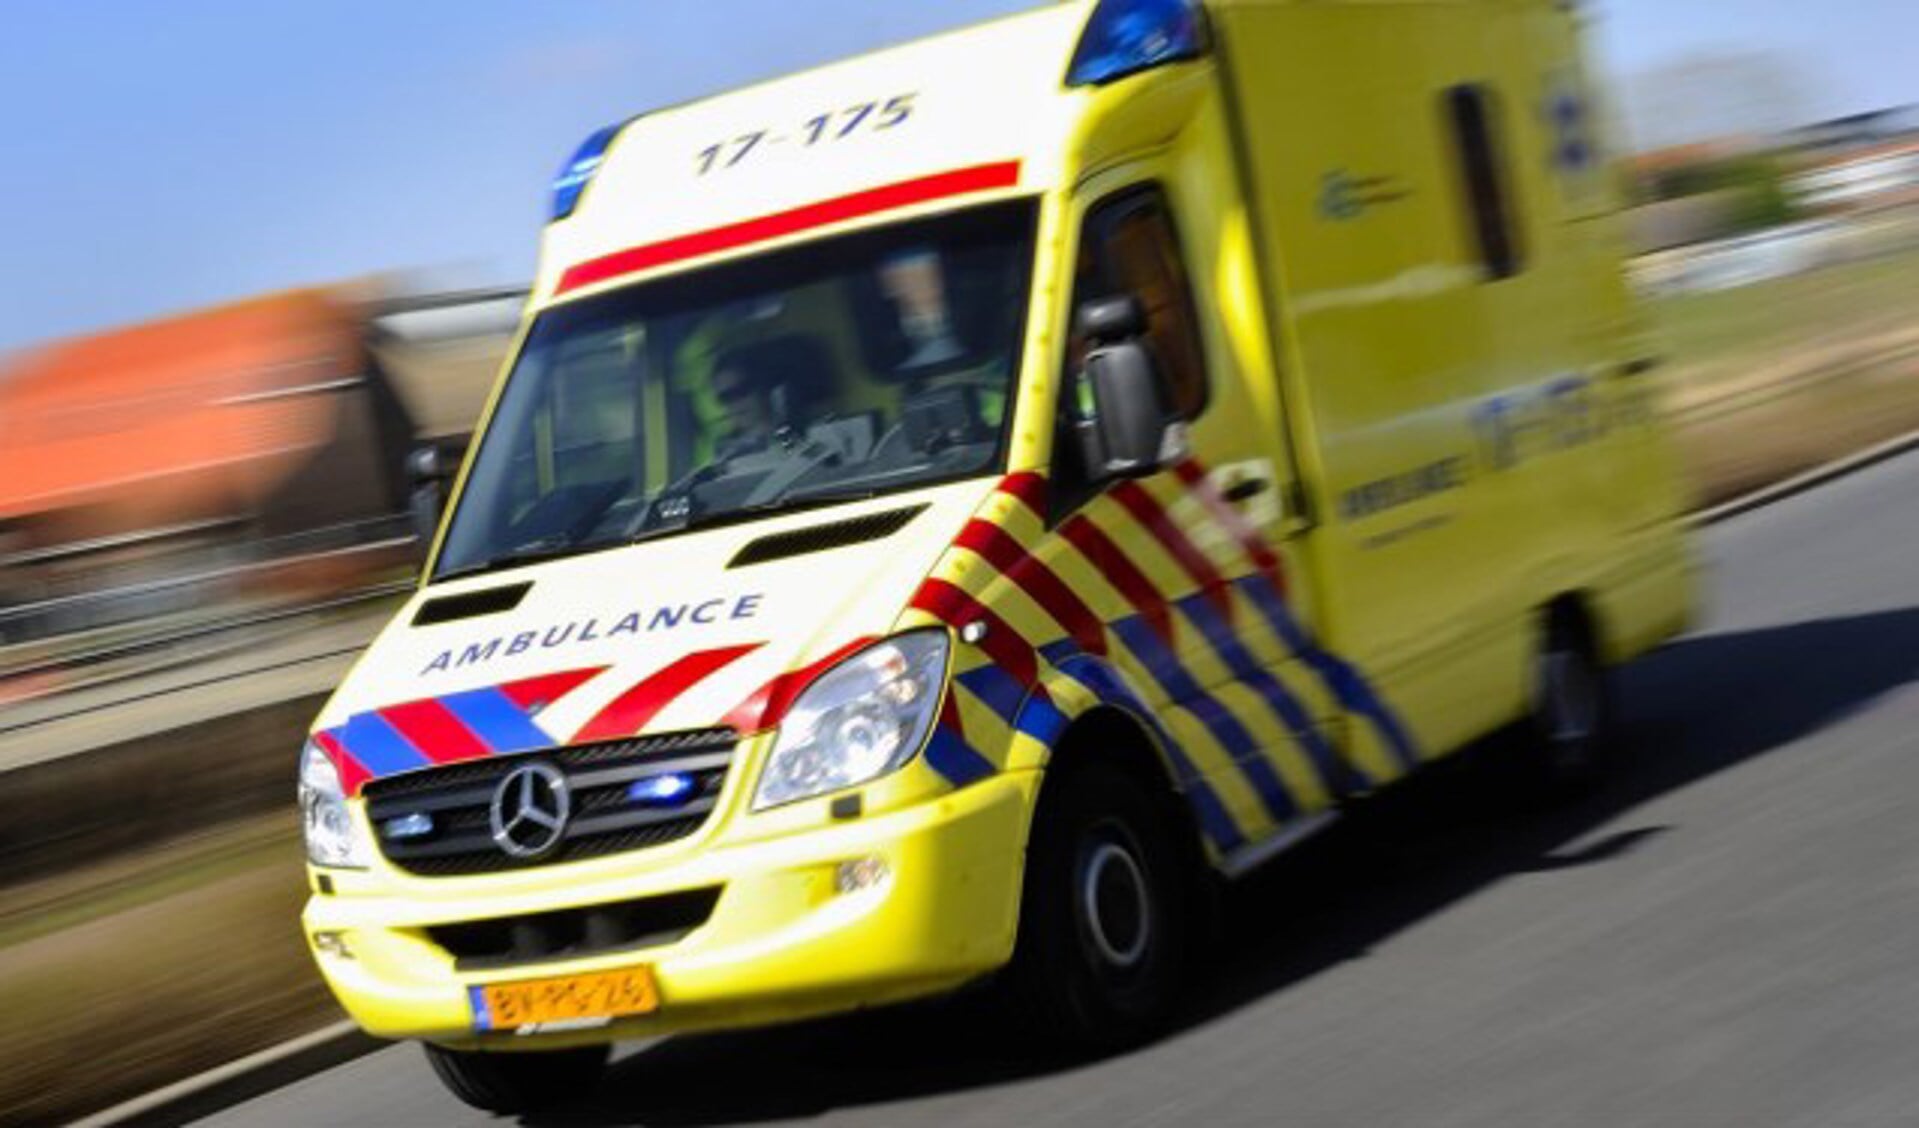 Ambulance op het Prins Willem Alexander Sportpark in Veghel wegens hartstilstand